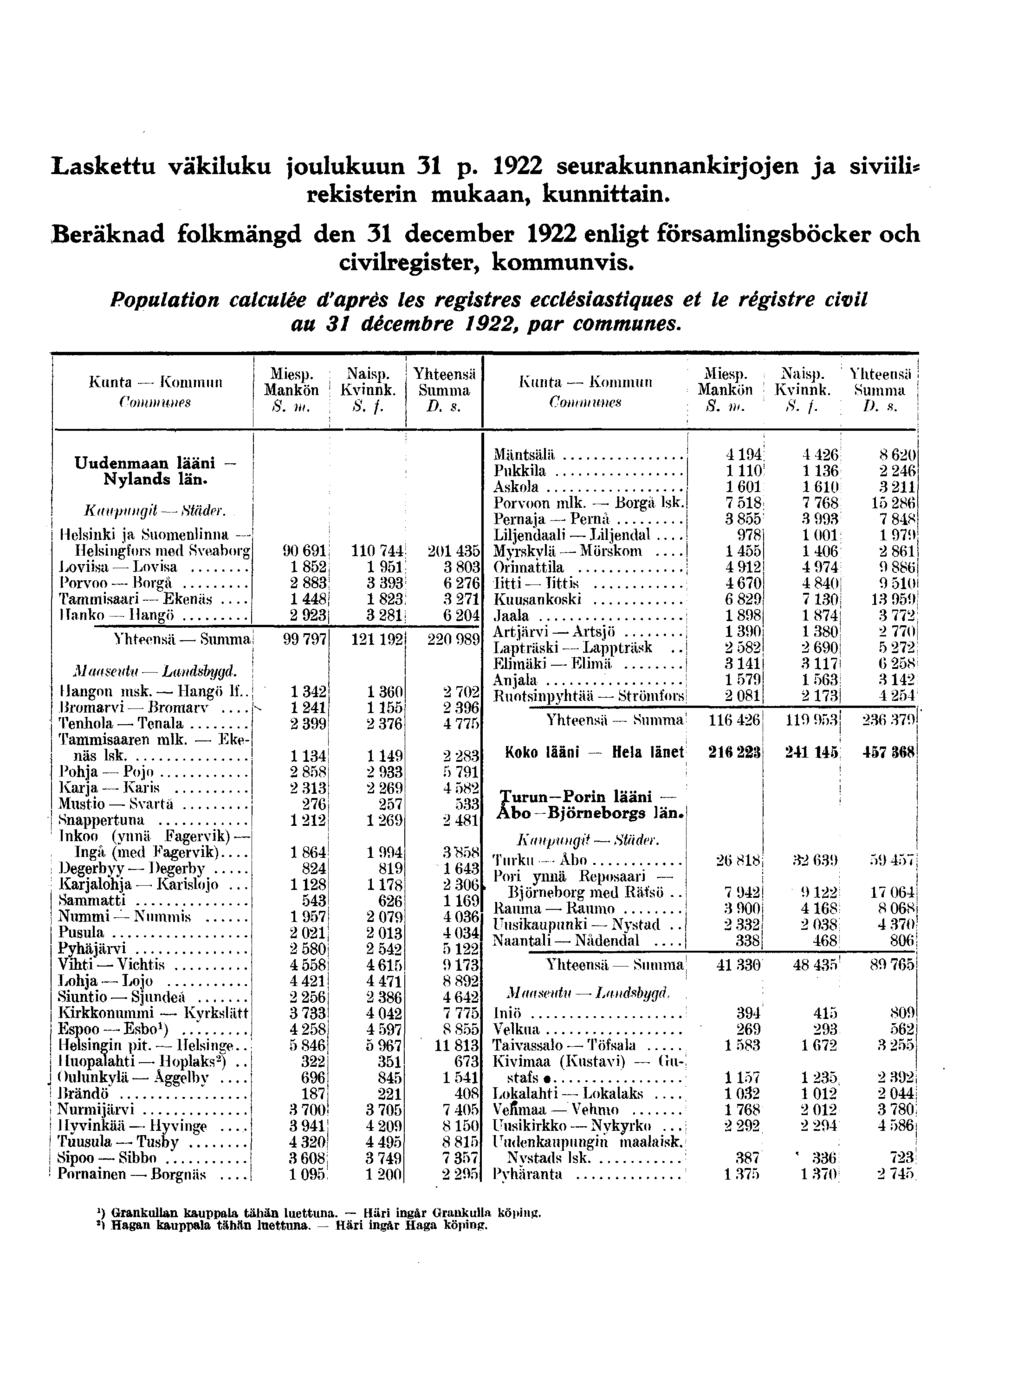 Laskettu väkiluku joulukuun 31 p. 1922 seurakunnankirjojen ja siviili* rekisterin mukaan, kunnittain. Beräknad folkmängd den 31 december 1922 enligt församlingsböcker och civilregister, kommunvis.